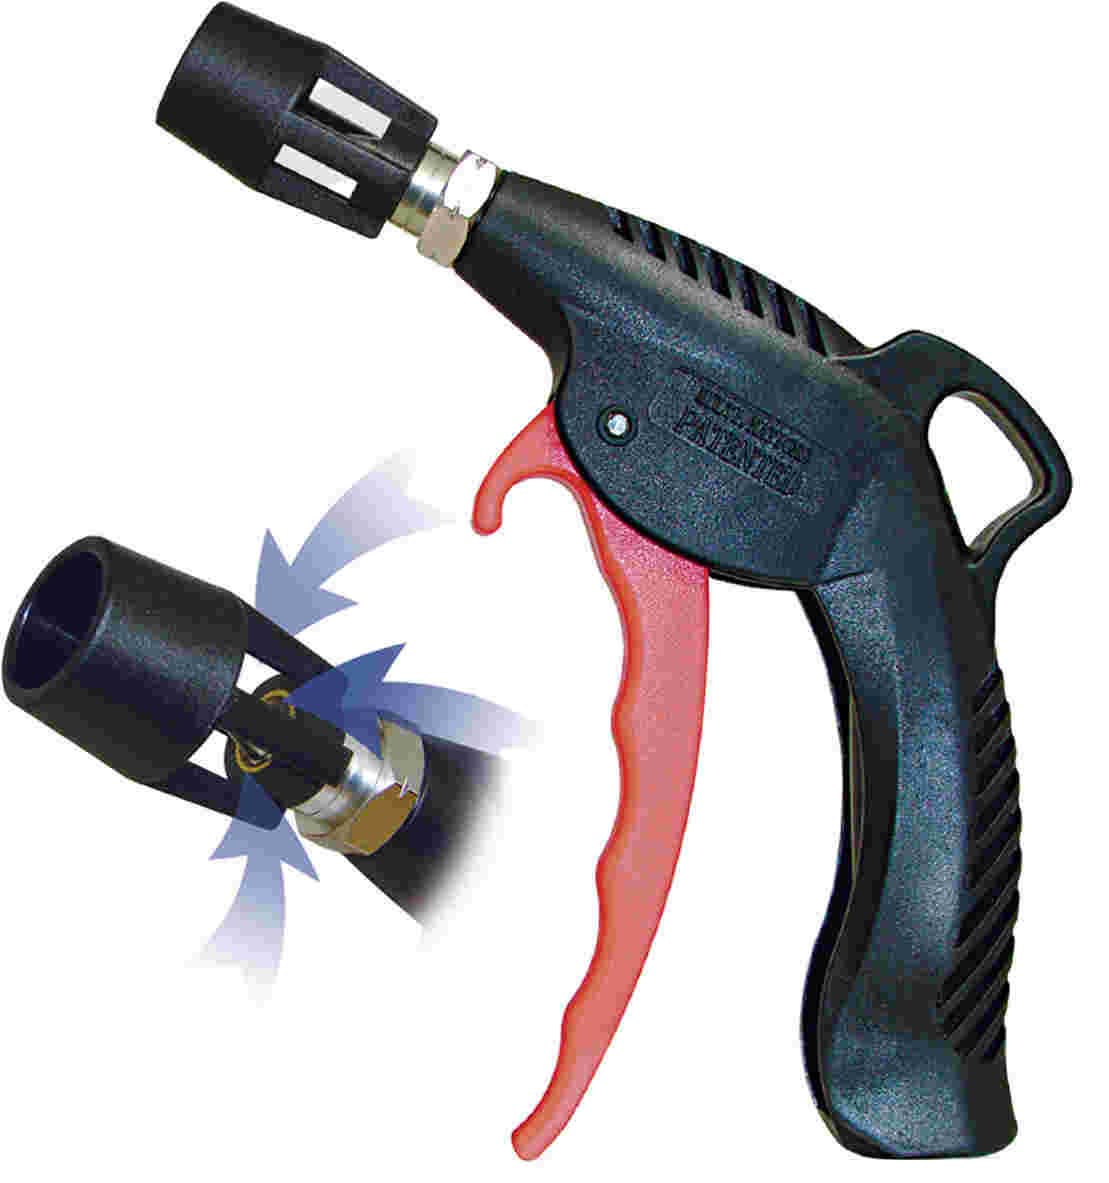 Turbo Venturi Tip Blow Gun